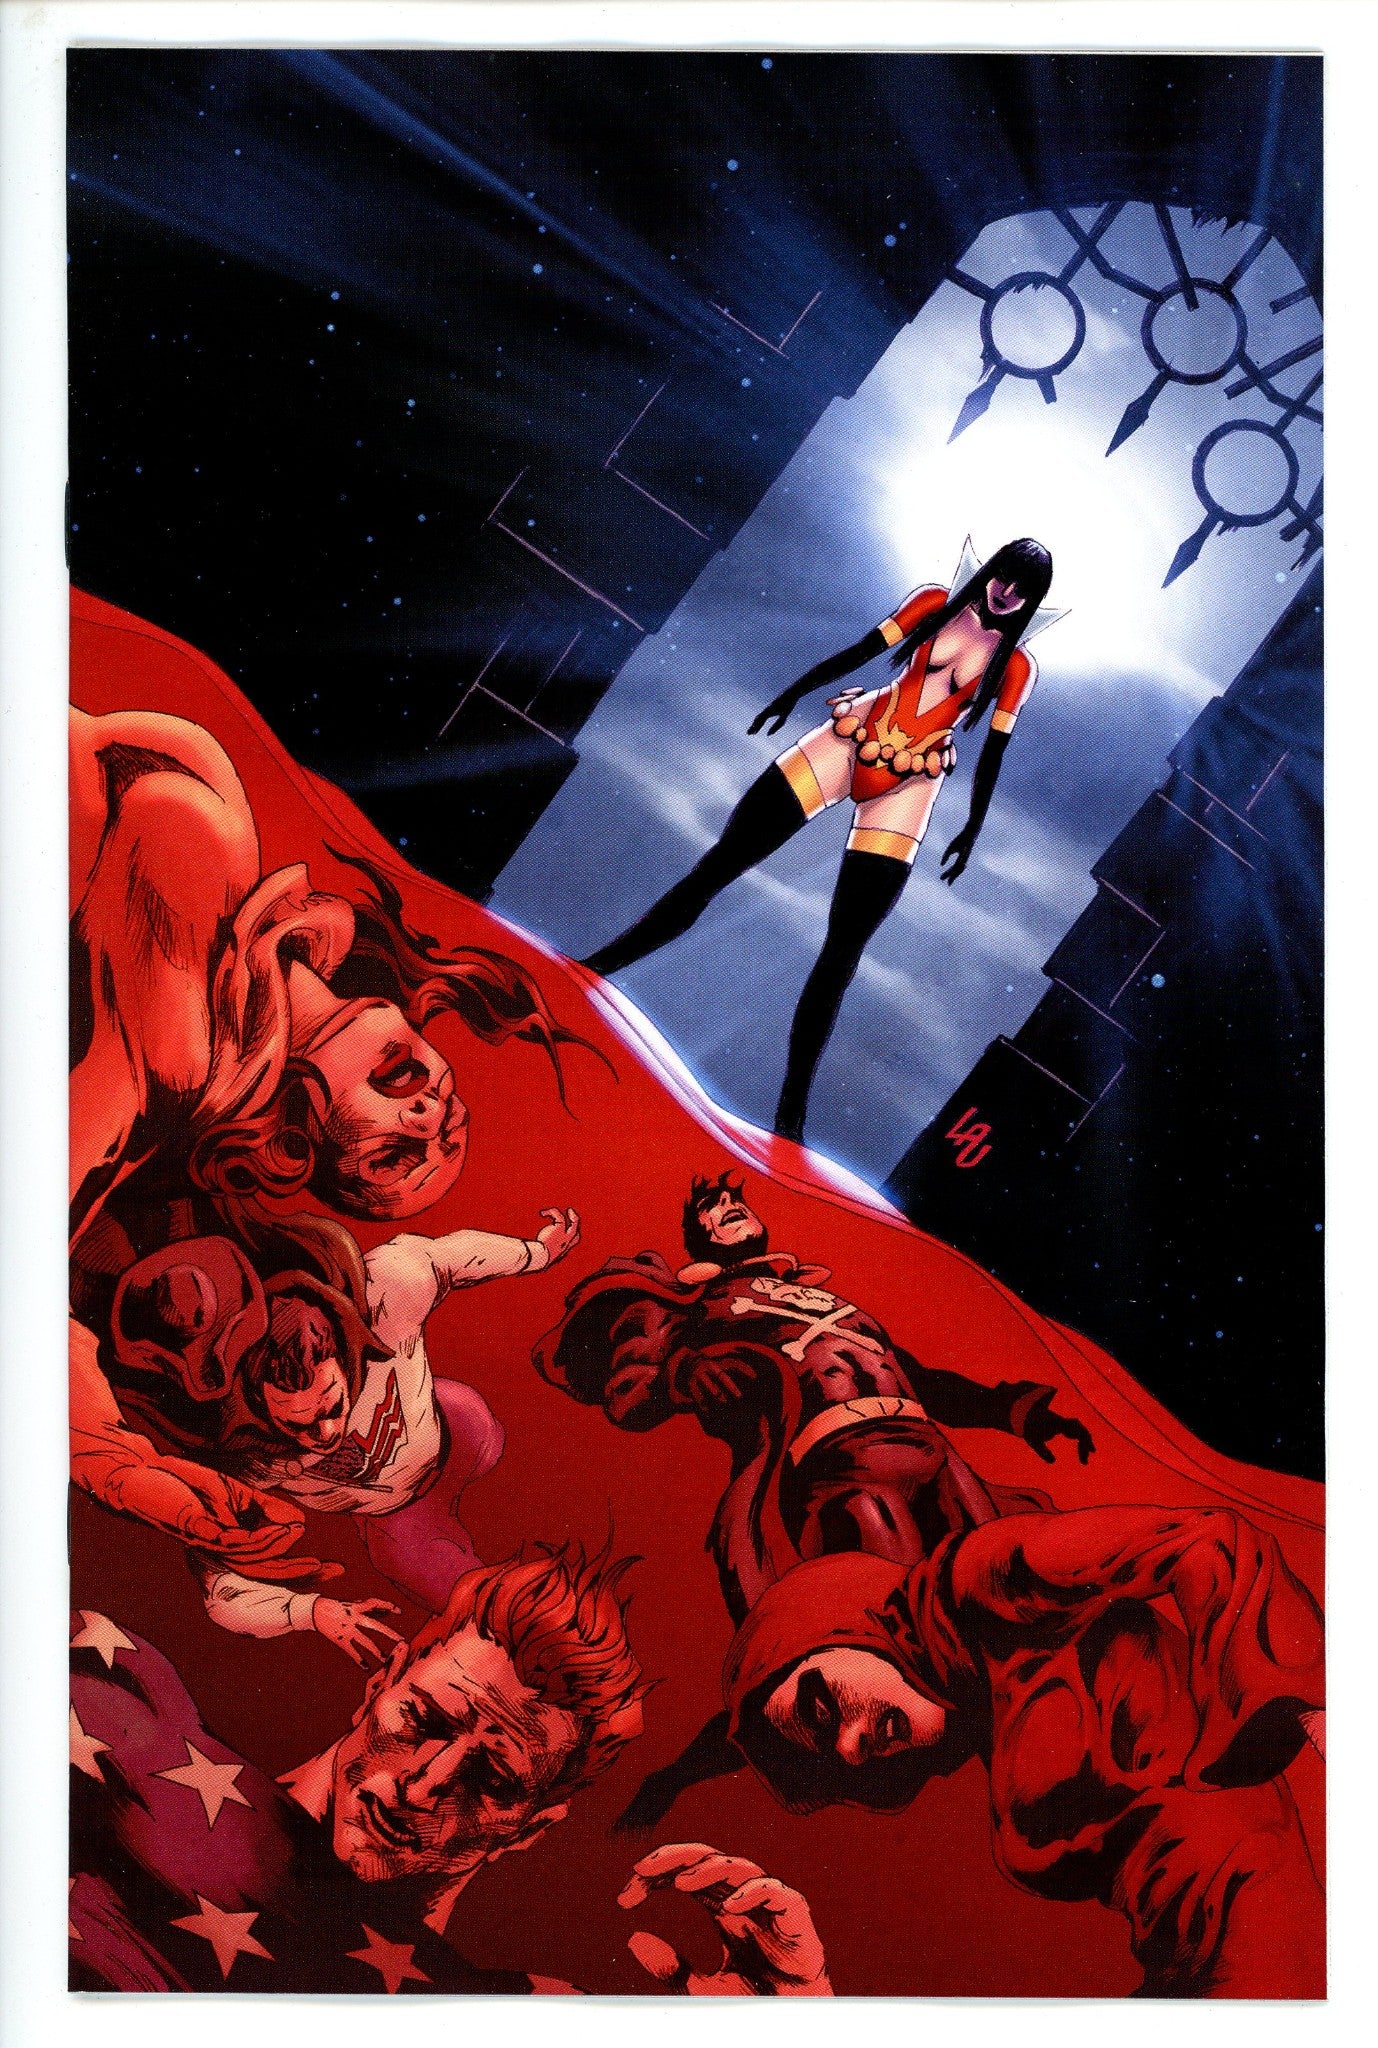 Vampirella Dark Powers 5 Lau Variant-CaptCan Comics Inc-CaptCan Comics Inc